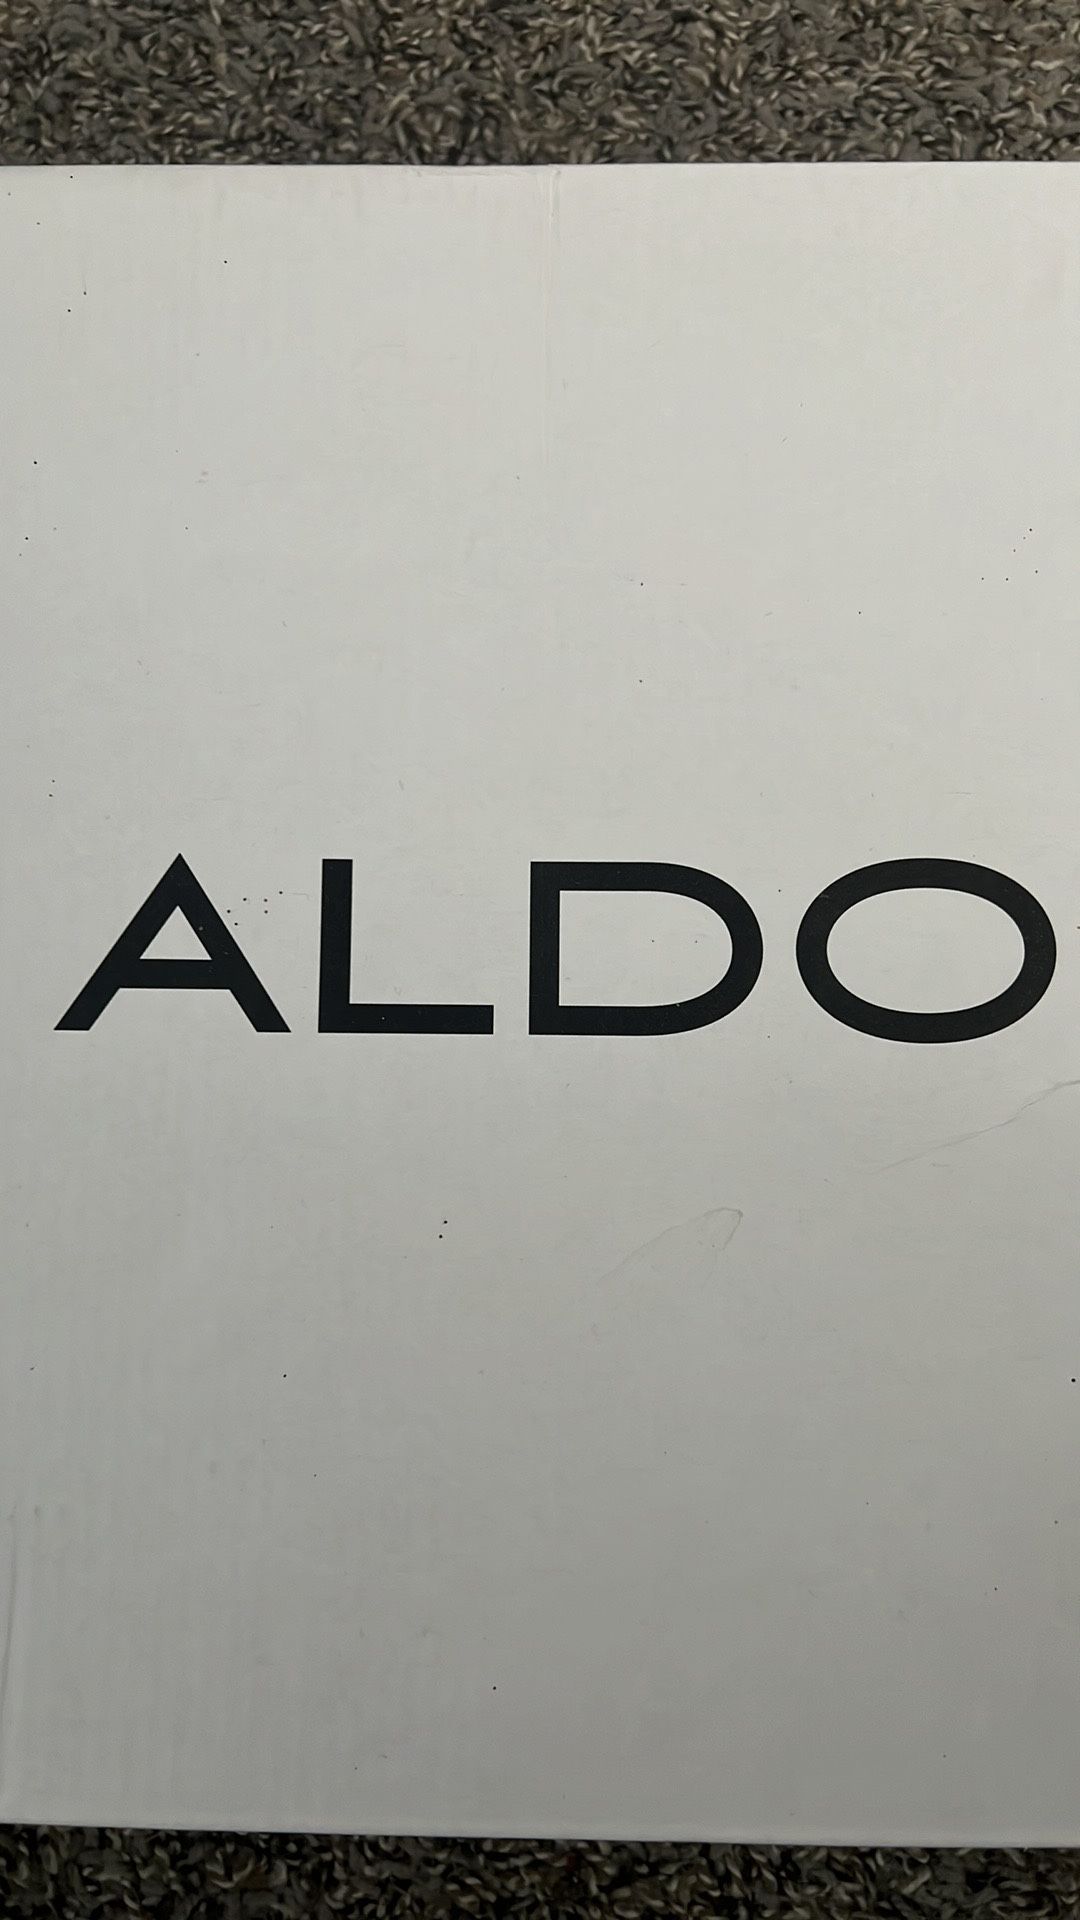 Aldo High heels